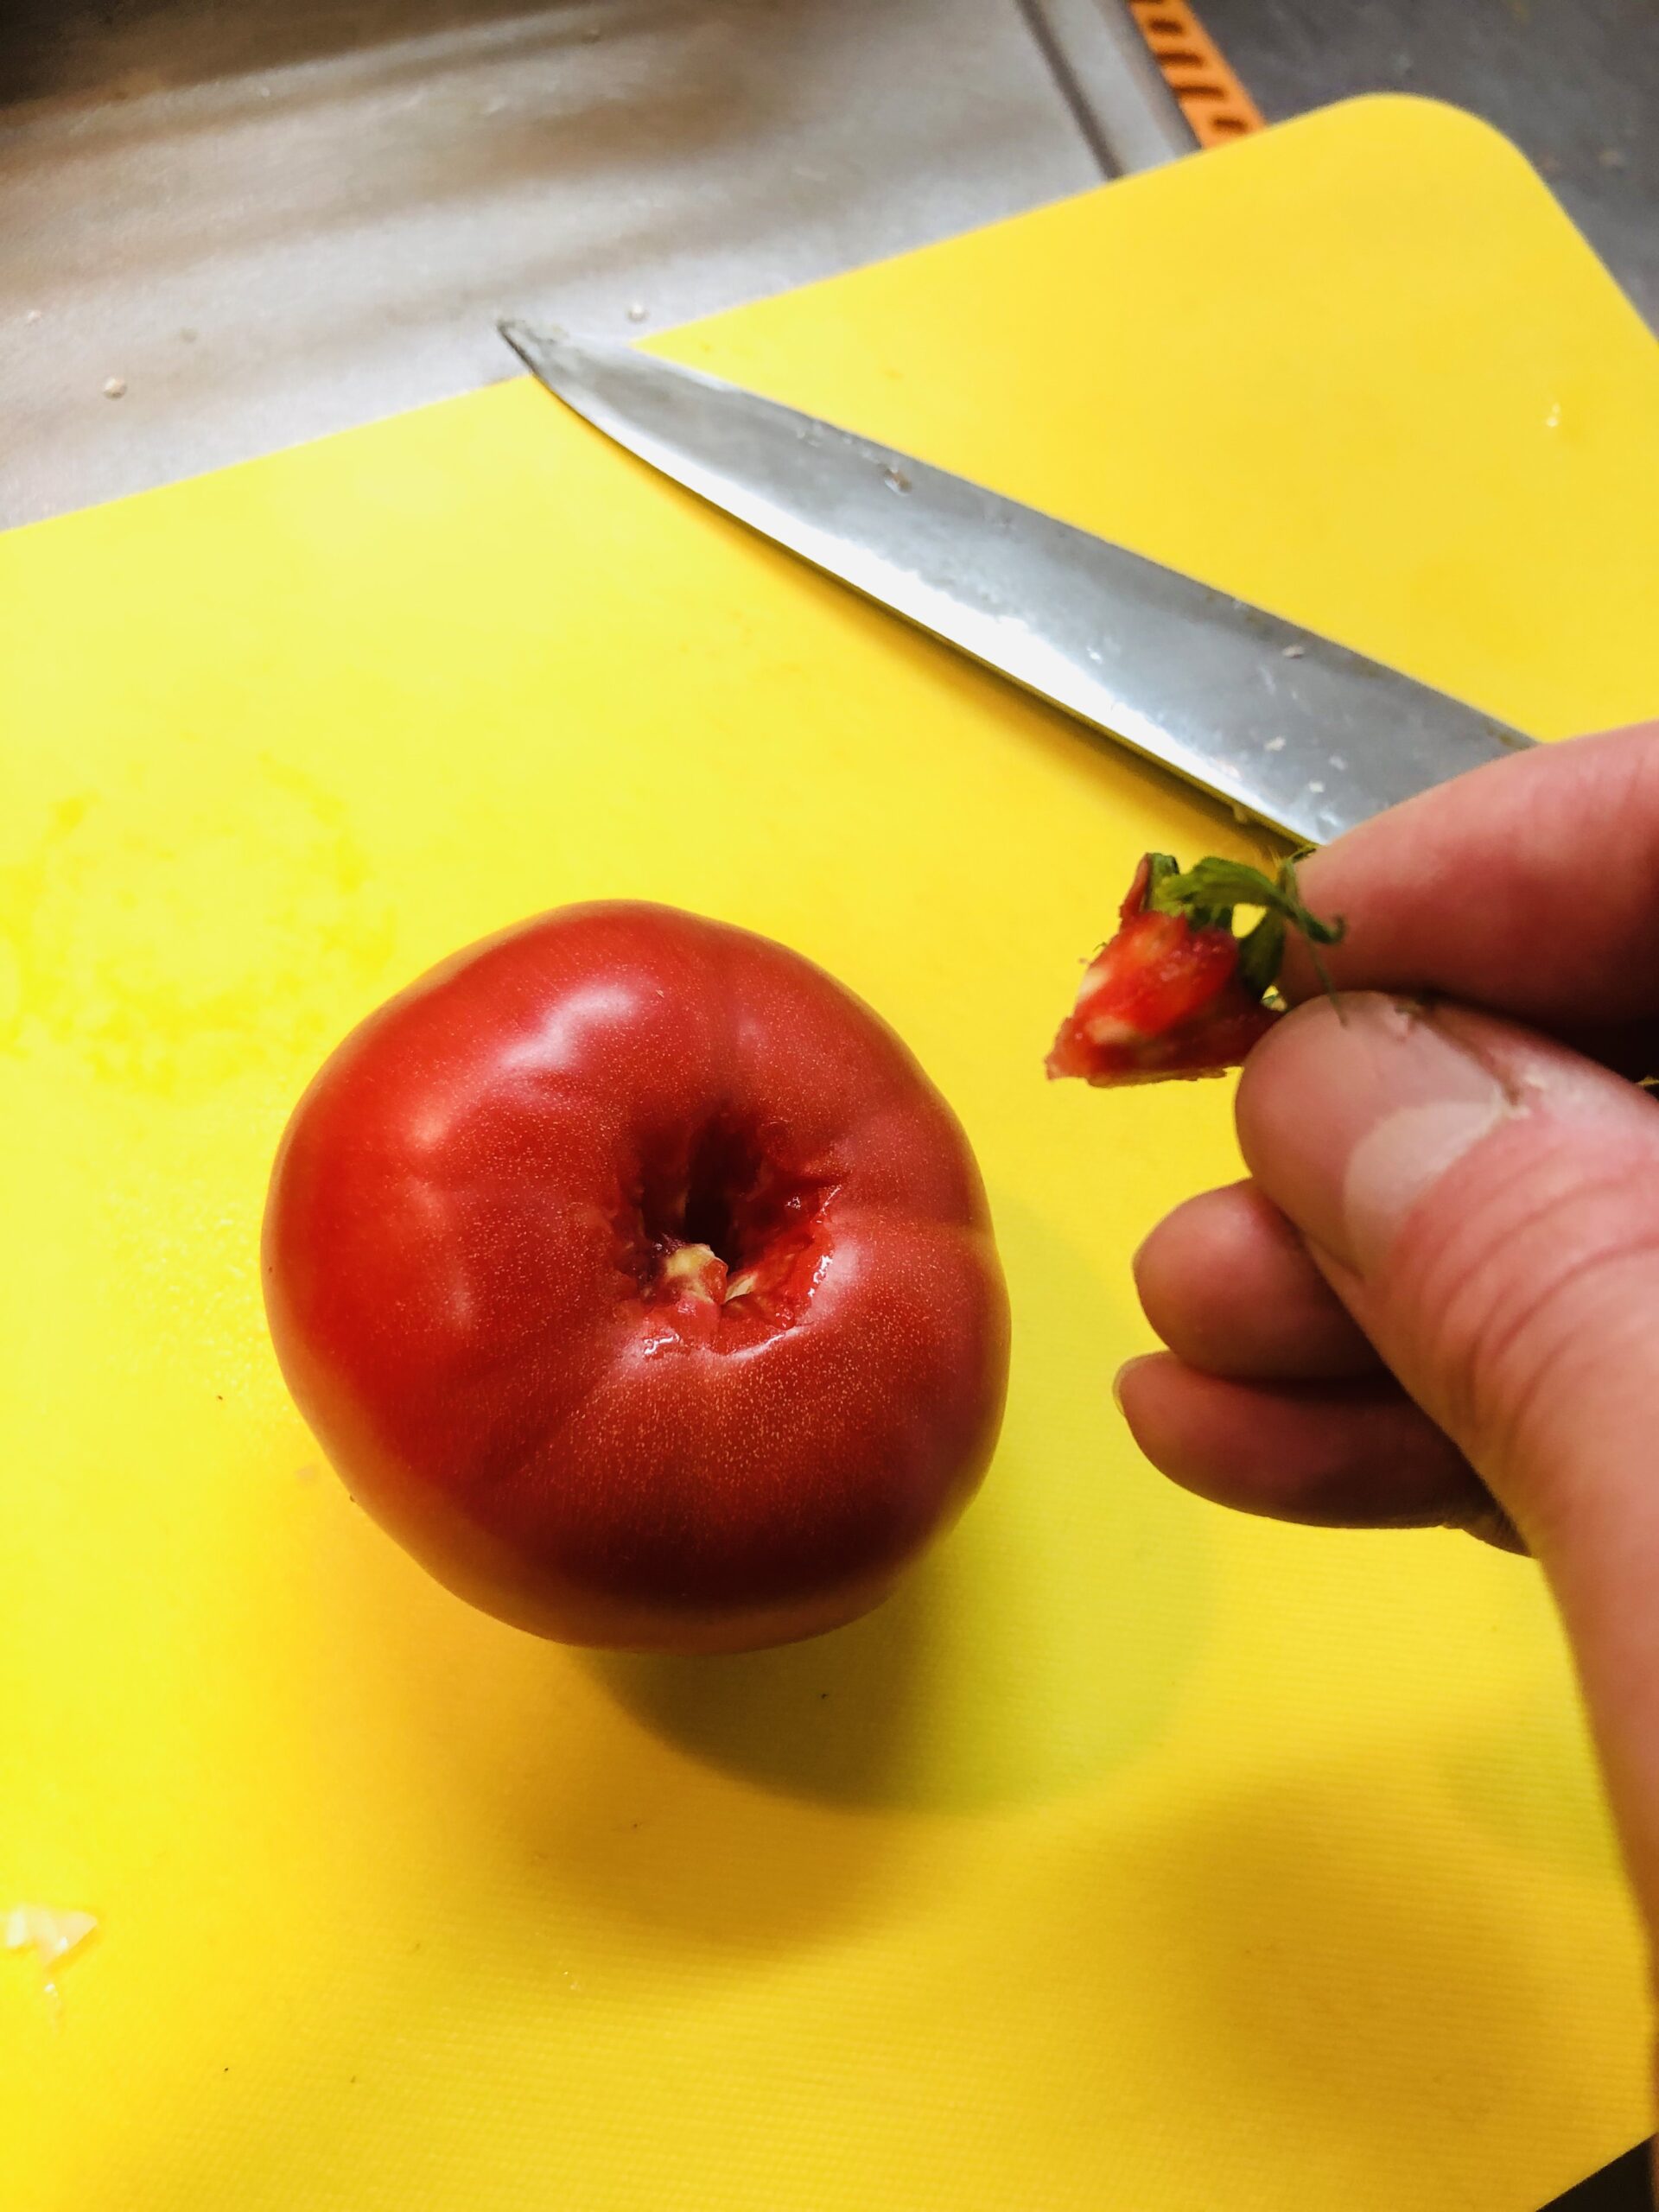 包丁でトマトのヘタと芯をくり抜いた状態の画像です